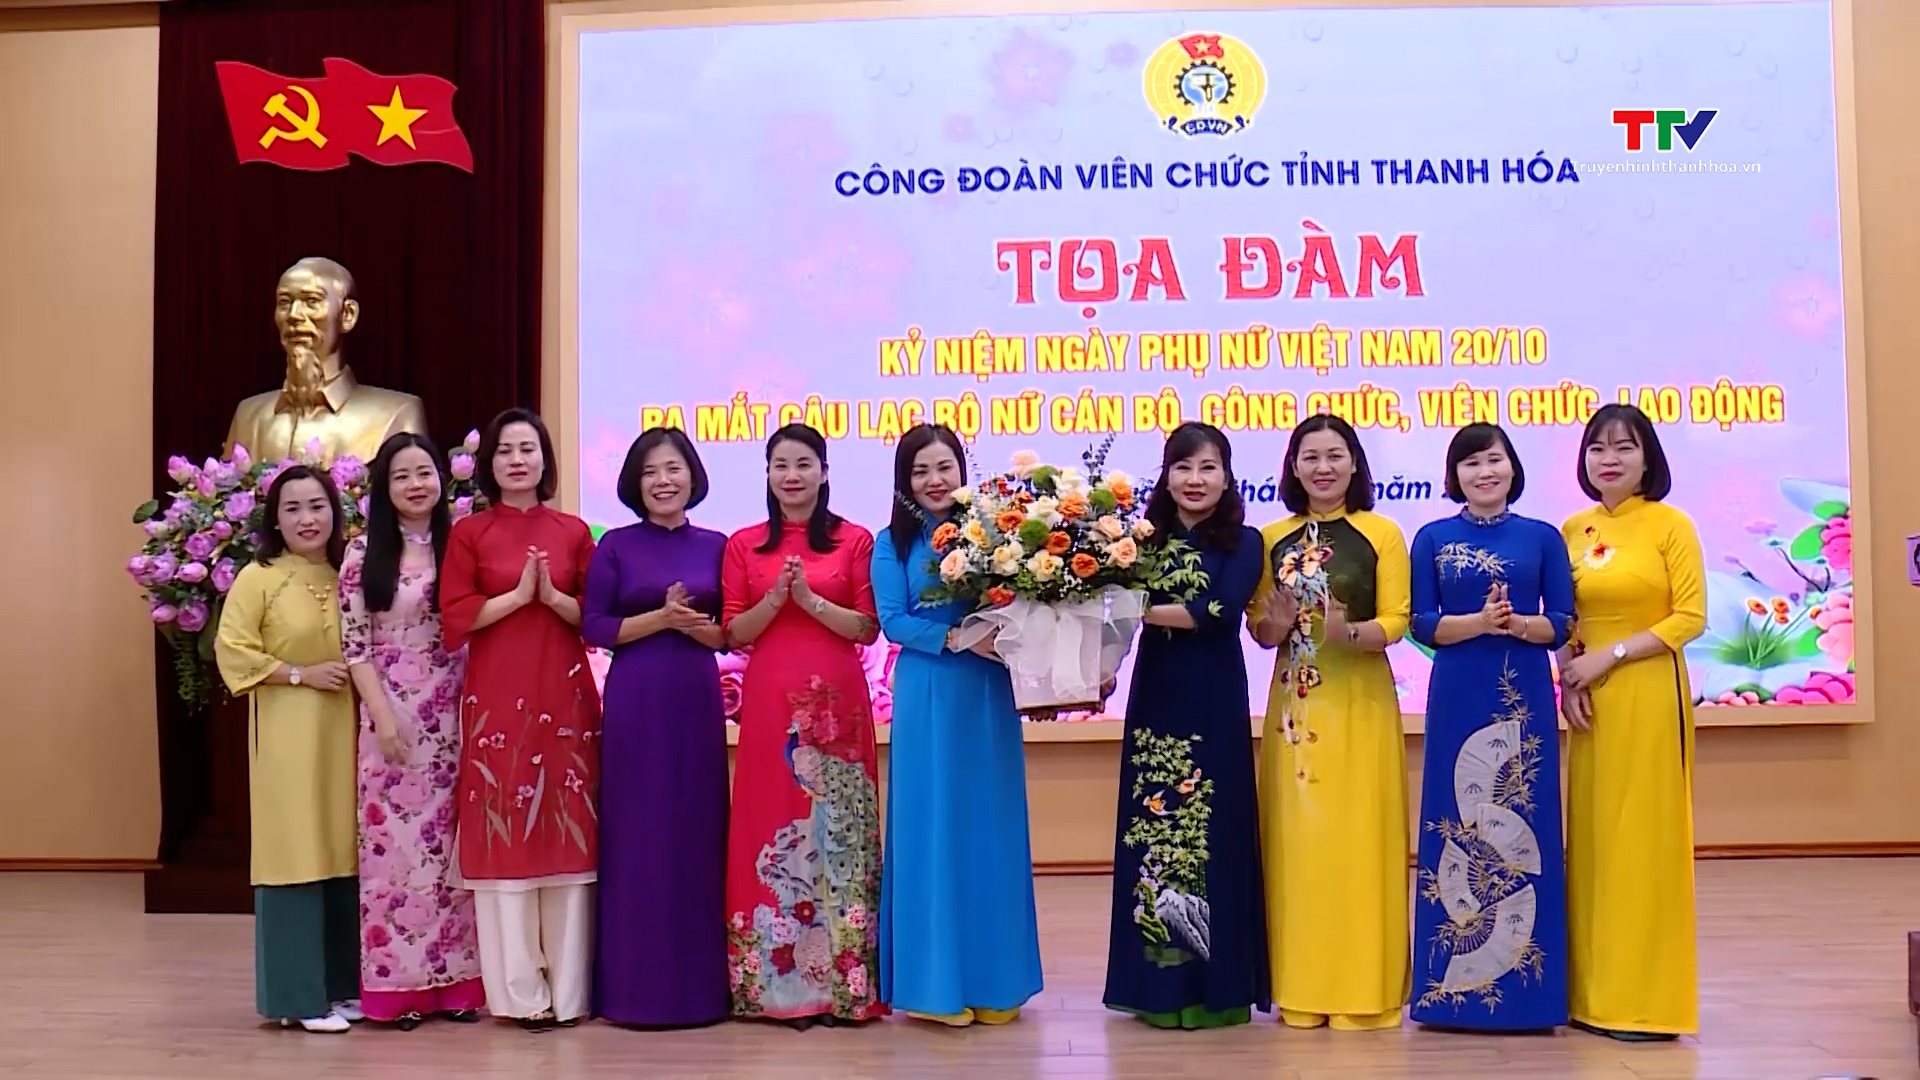 Công đoàn Viên chức tỉnh Thanh Hoá toạ đàm kỷ niệm Ngày Phụ nữ Việt Nam 20/10 - Ảnh 2.